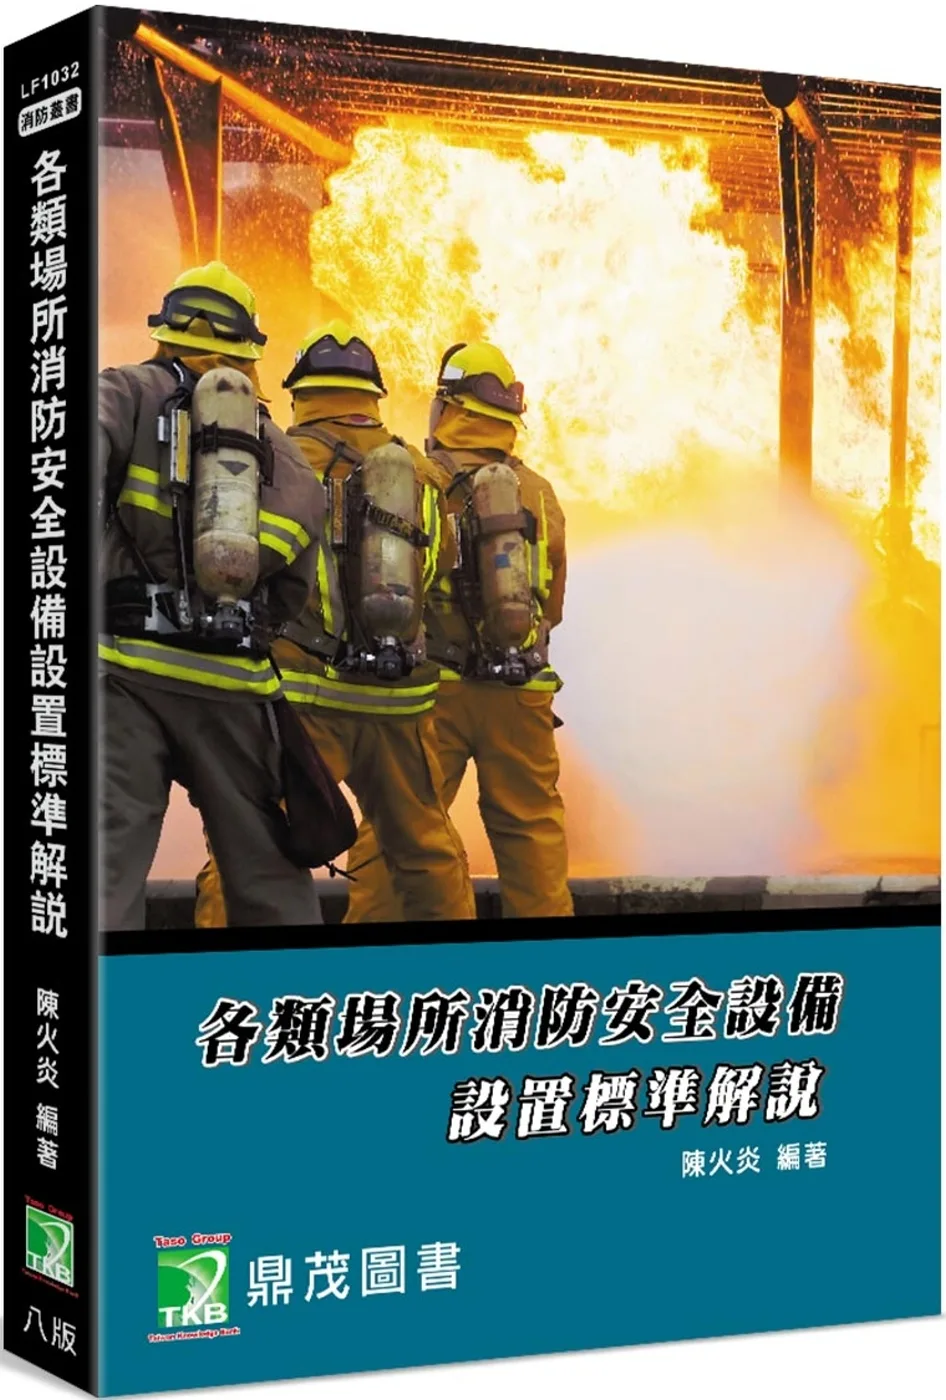 各類場所消防安全設備設置標準解說[適用消防設備師/士、消防人員]